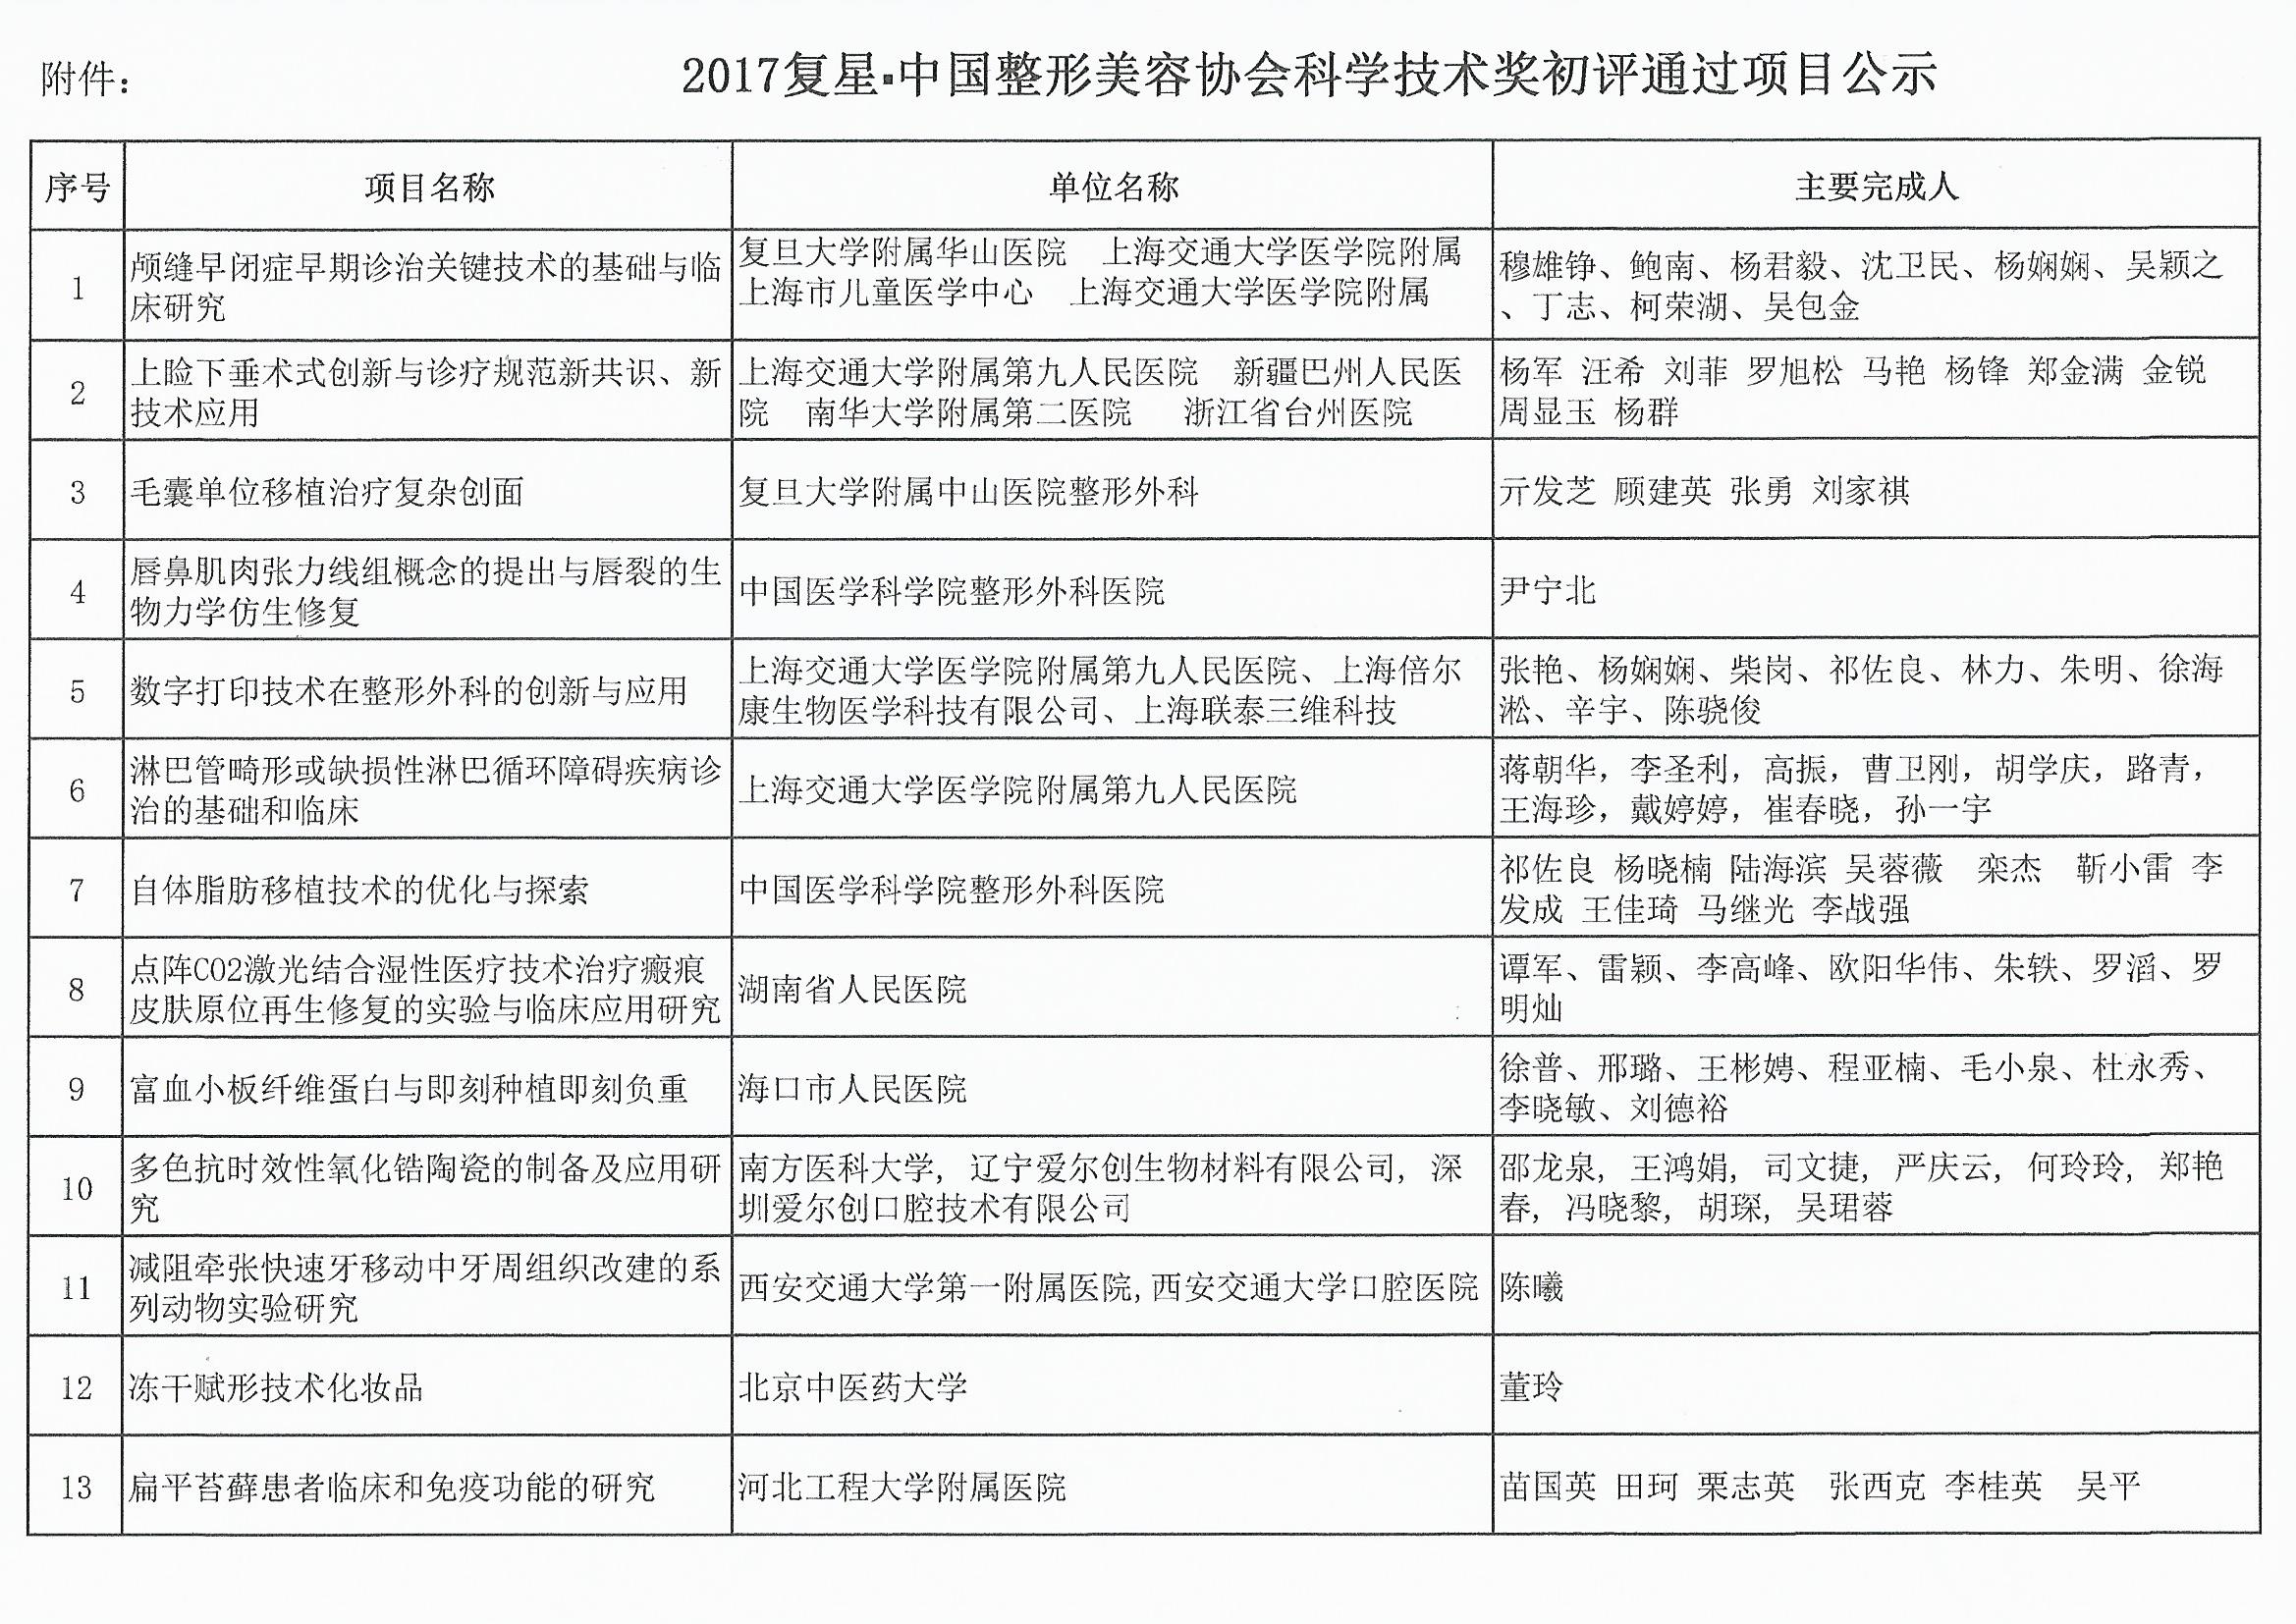 关于2017复星中国整形美容协会科学技术奖初评通过项目的公示 (1)_页面_2.jpg